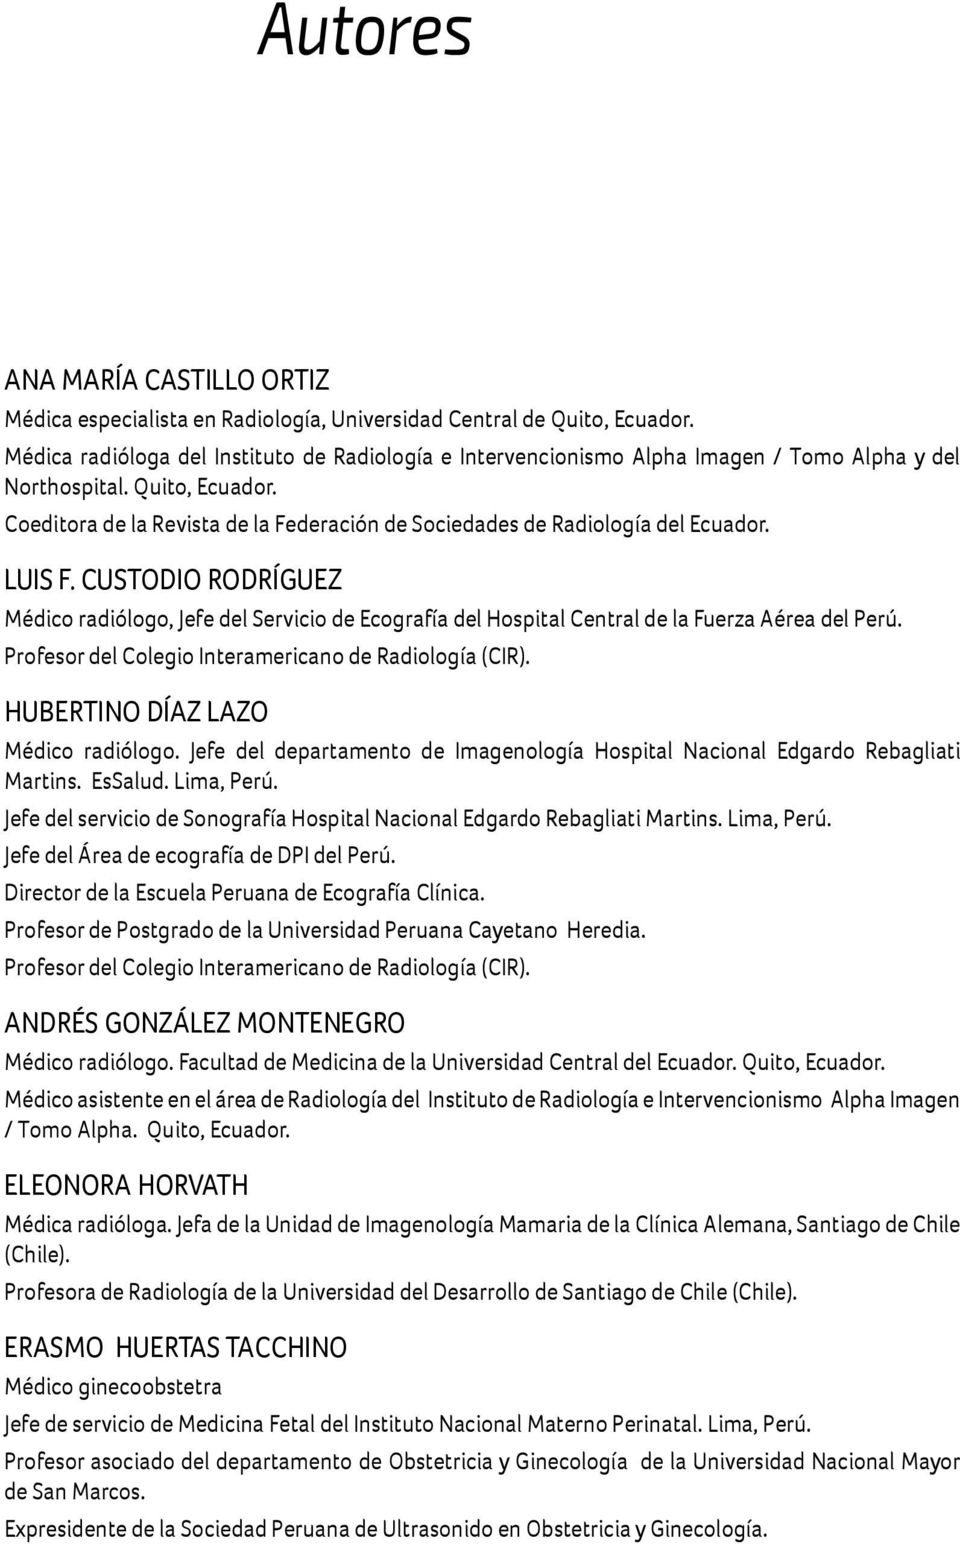 CUSTODIO RODRÍGUEZ Médico rdiólogo, Jefe del Servicio de Ecogrfí del Hospitl Centrl de l Fuerz Aére del Perú. Profesor del Colegio Intermericno de Rdiologí (CIR). HUBERTINO DÍAZ LAZO Médico rdiólogo.